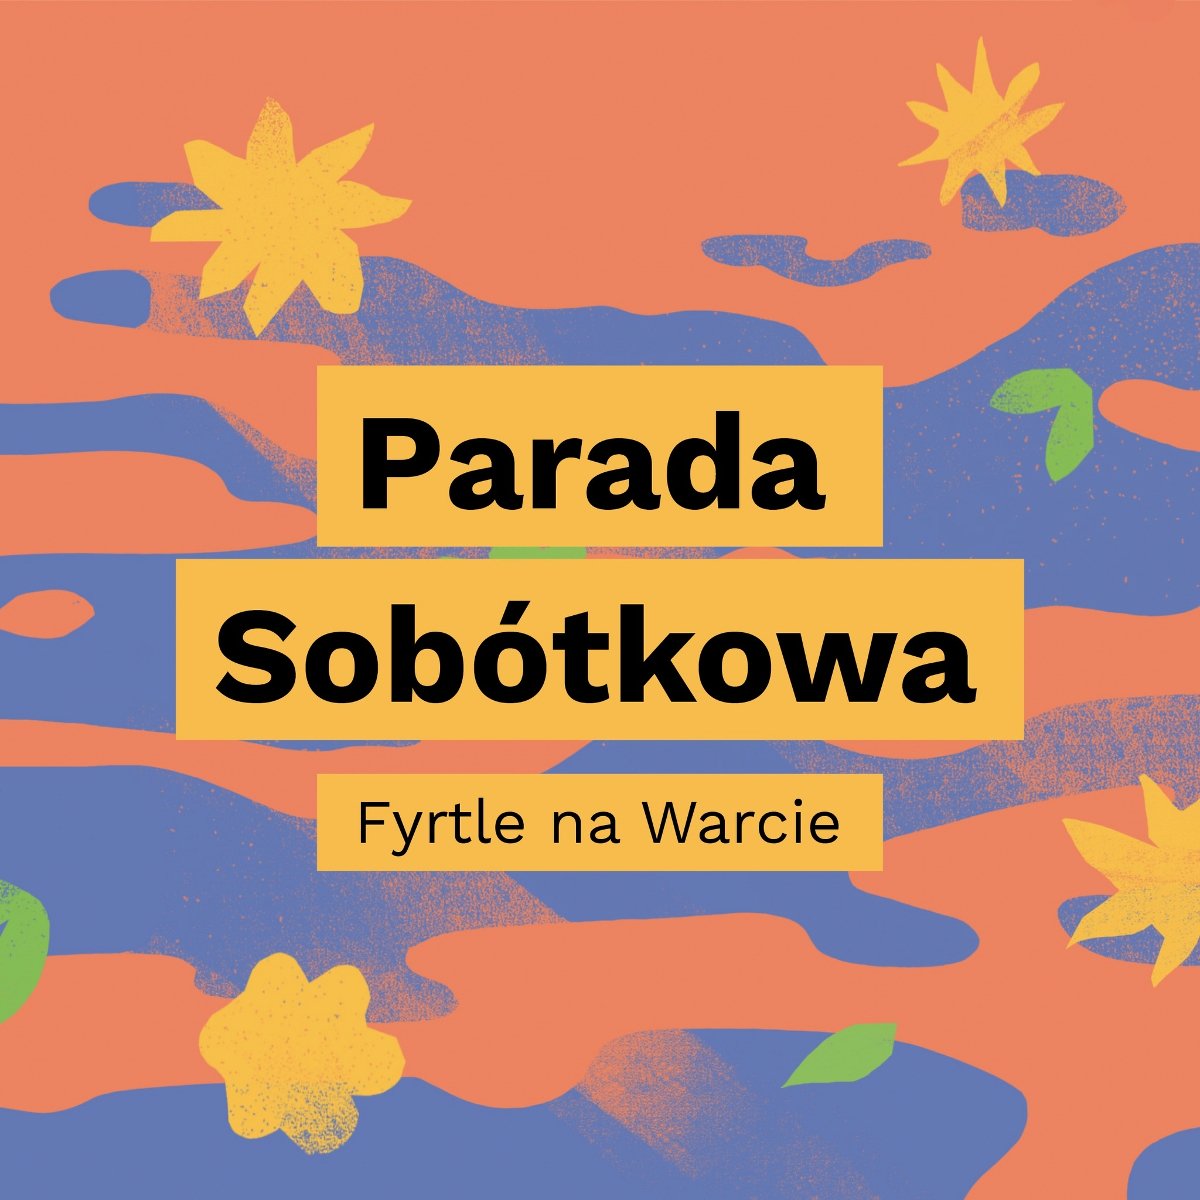 Pomarańczowo-niebieski plakat z kwiatami. Na środku trzy żółte prostokąty z napisami: "Parada Sobótkowa. Fyrtle na Warcie". - grafika artykułu